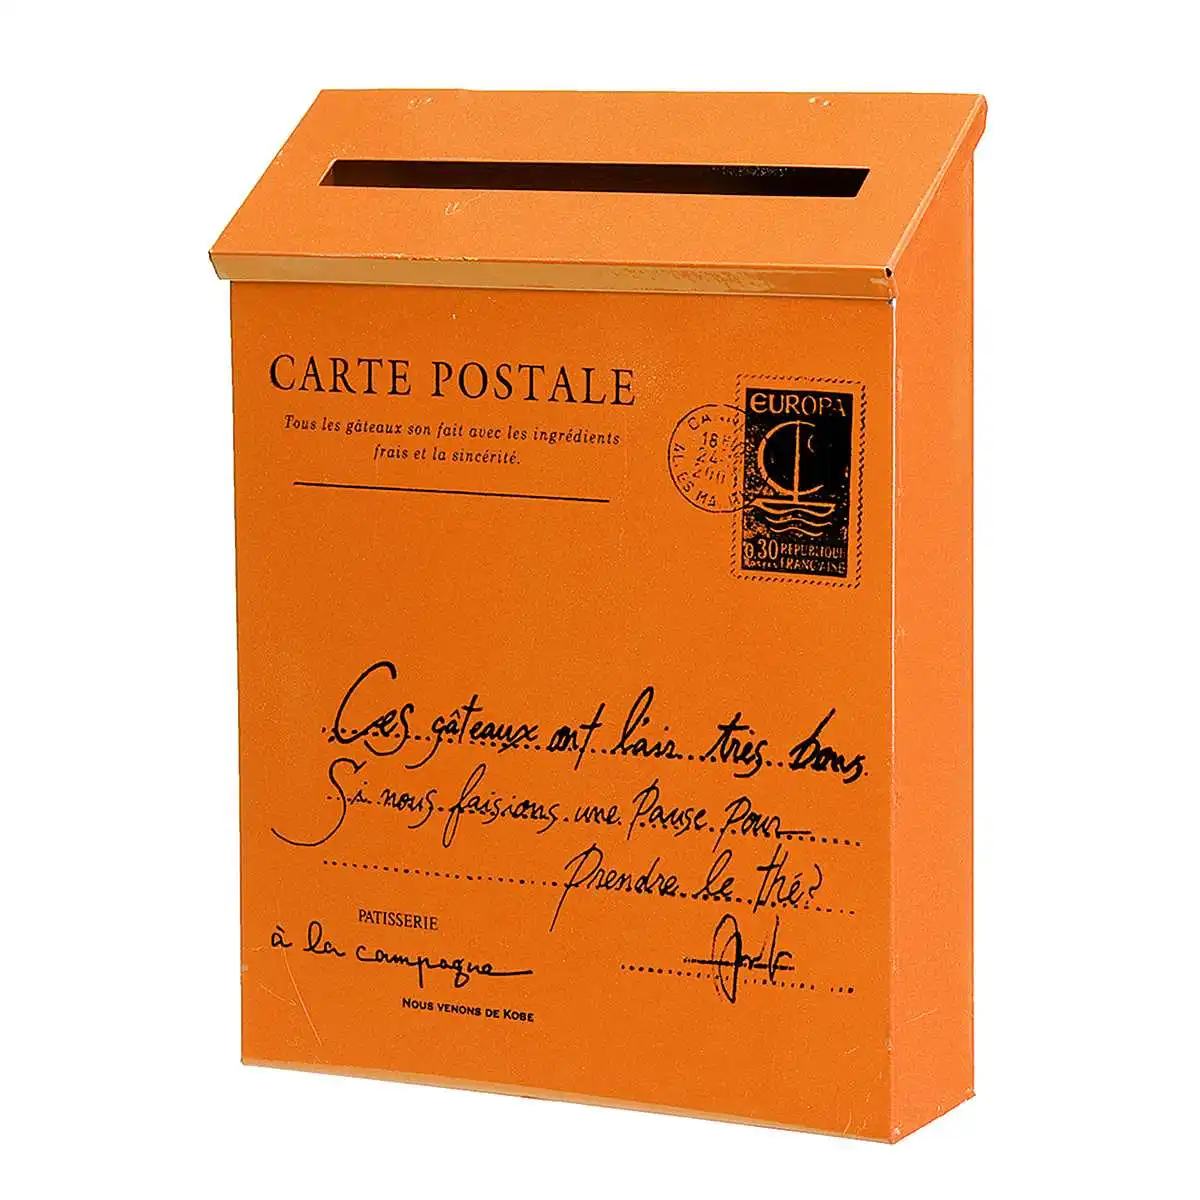 Ретро американский пасторальный настенный почтовый ящик мода ведро газета коробки почтовый ящик металлический буквенный замок для почтового ящика украшения сада - Цвет: Оранжевый